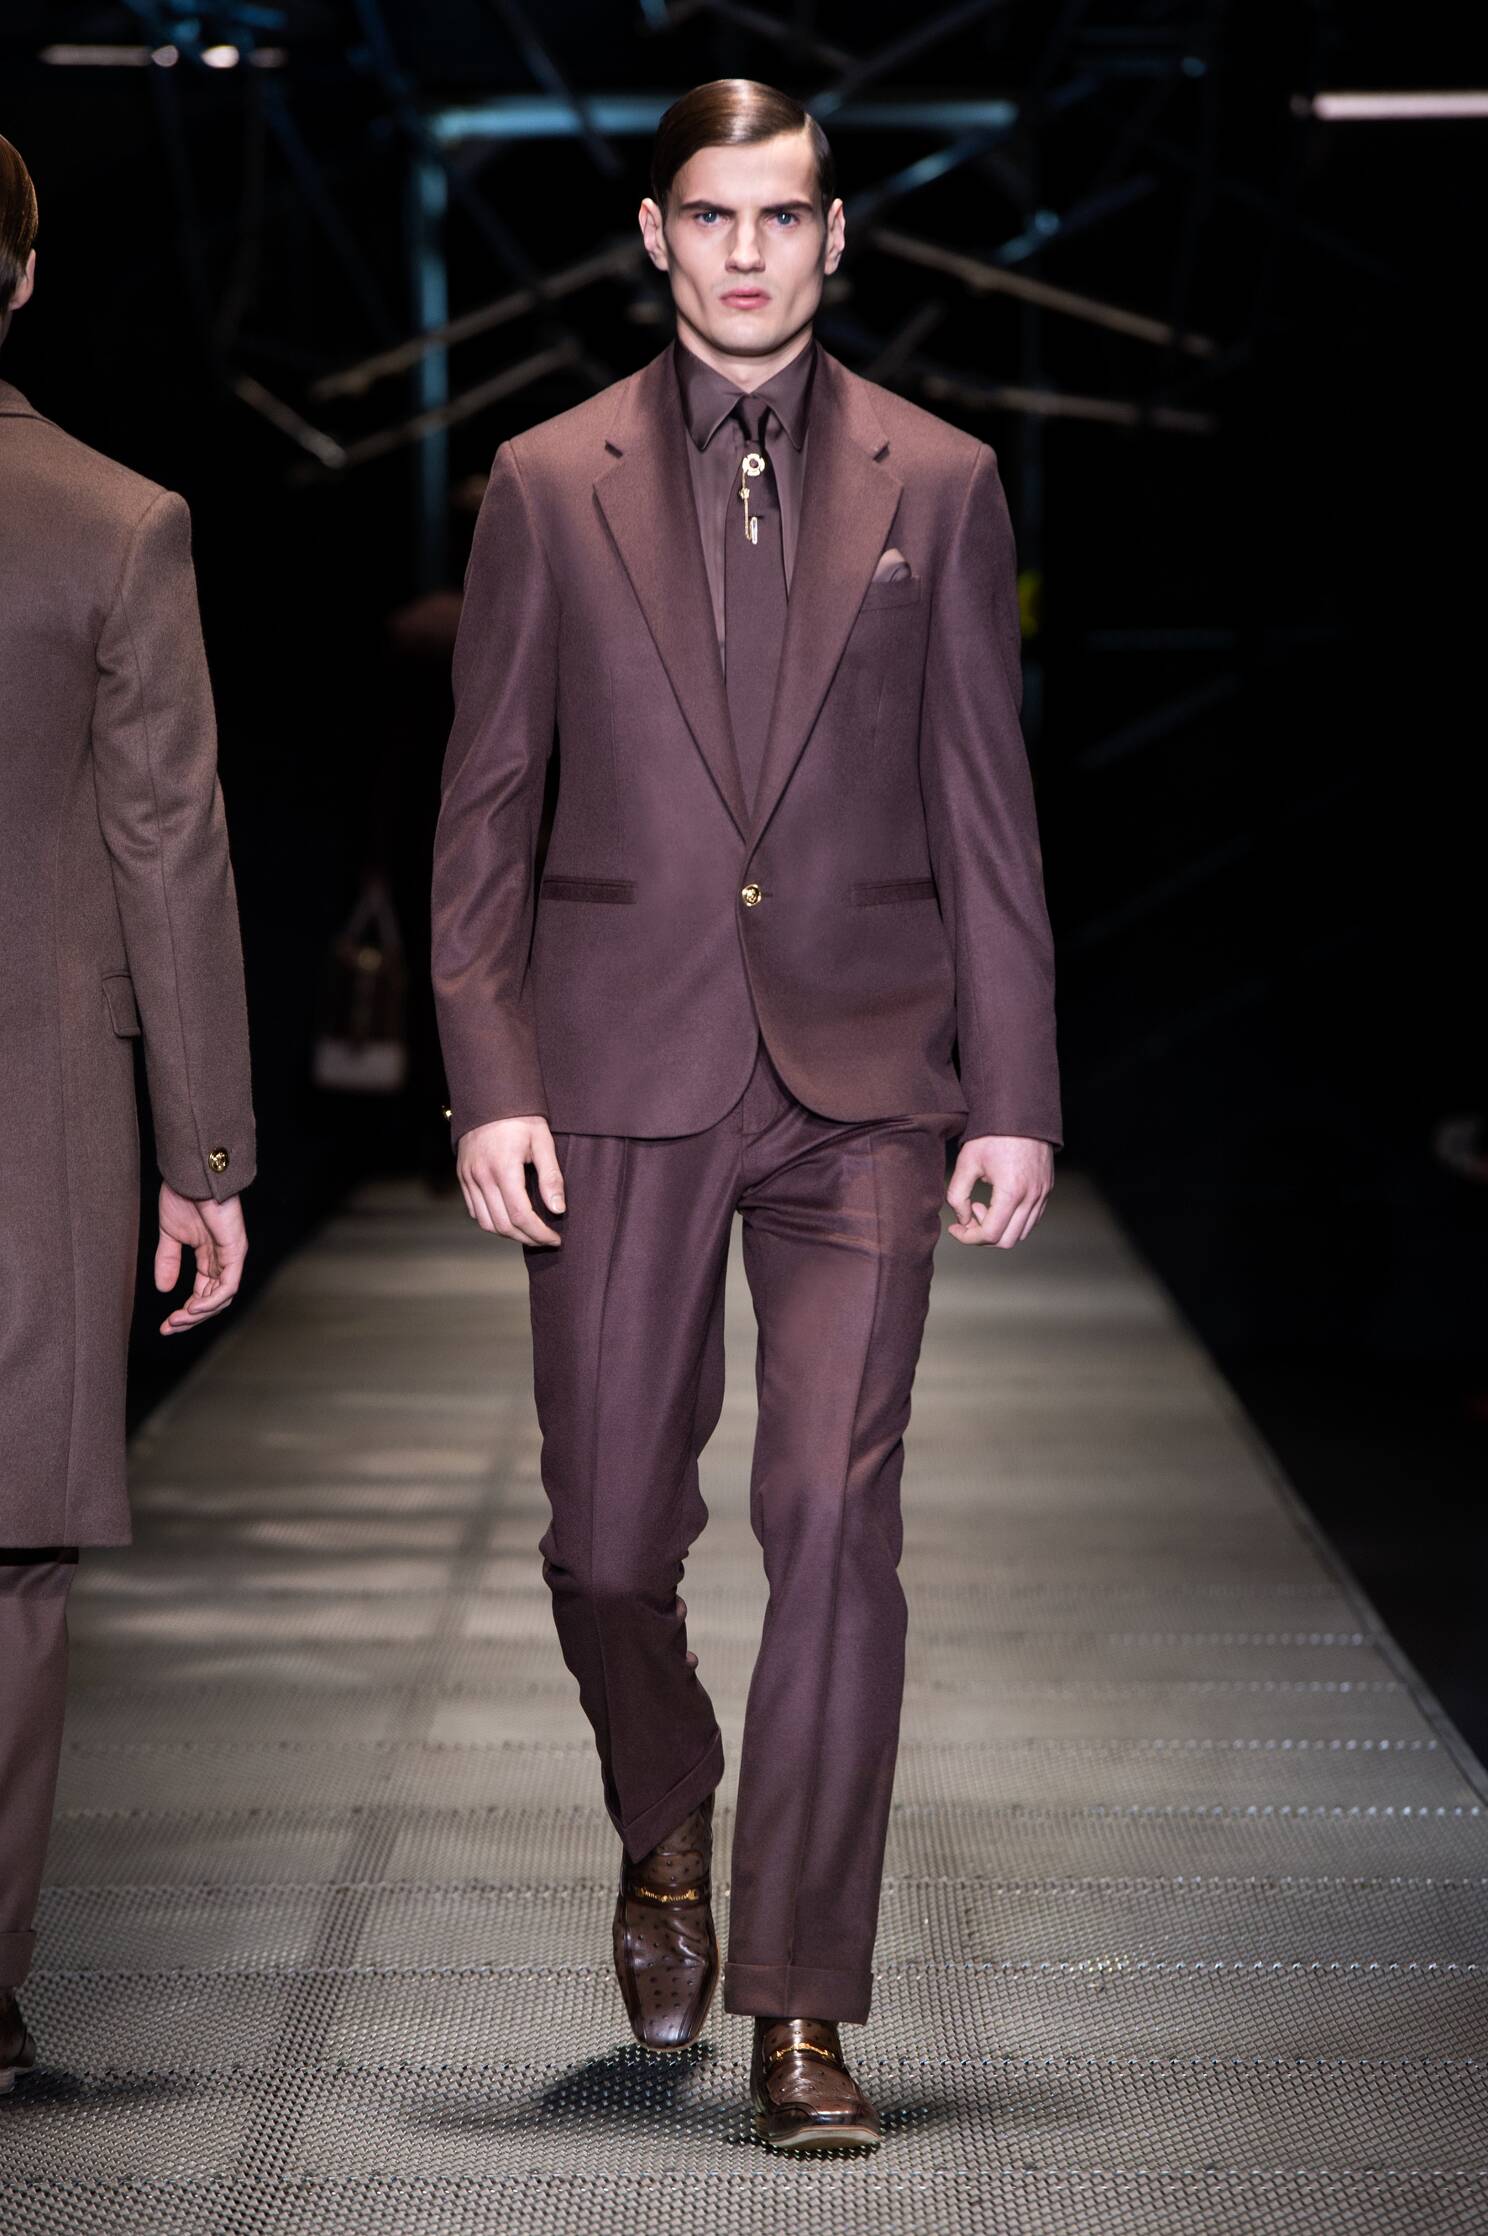 versace men's suits collection